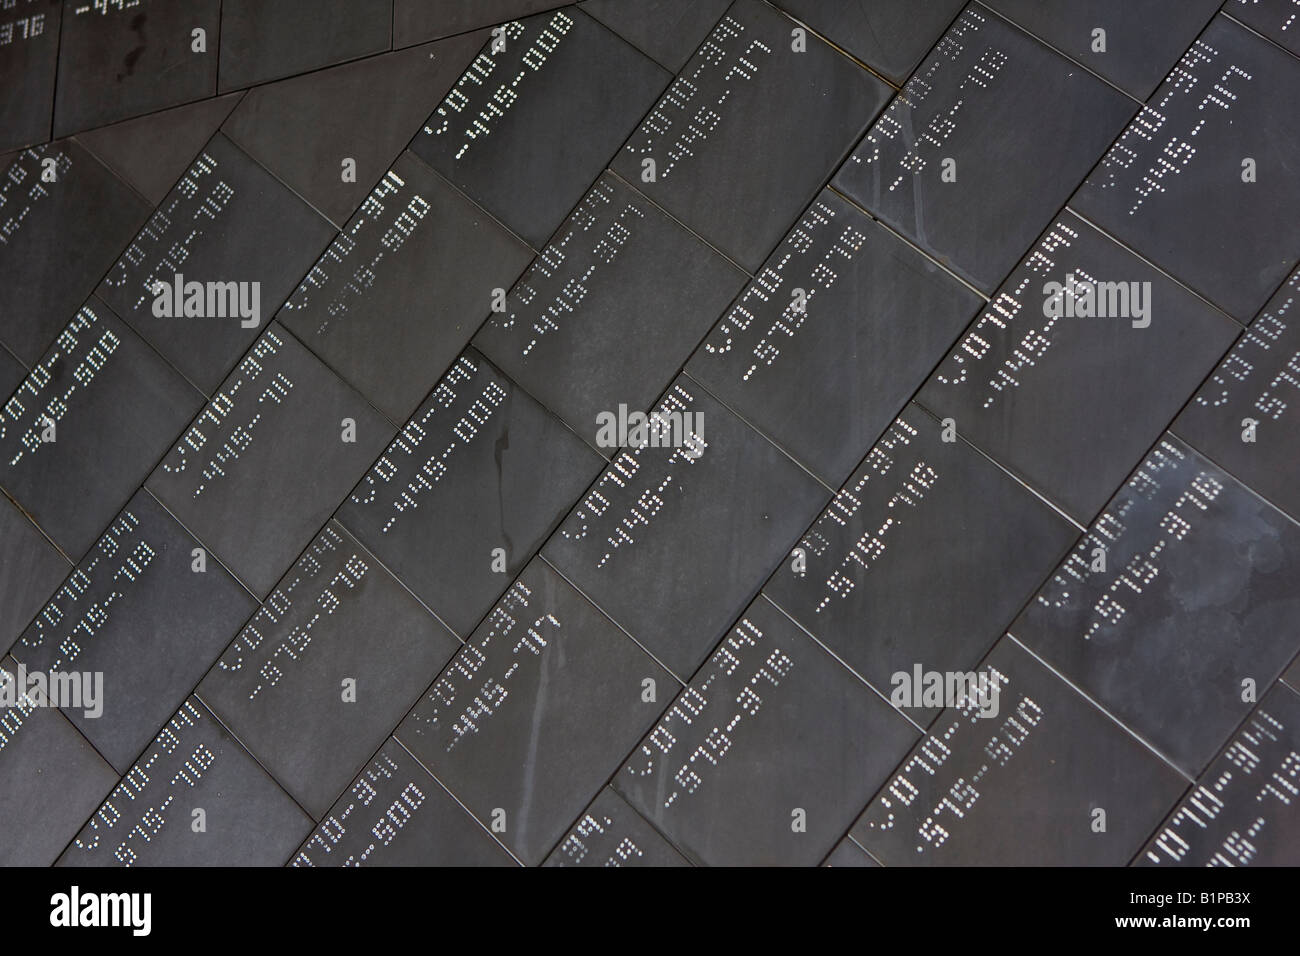 Tuiles de l'écran thermique de la navette spatiale à bord de la navette à la John F Kennedy Space Center à Cap Canaveral Floride USA Banque D'Images